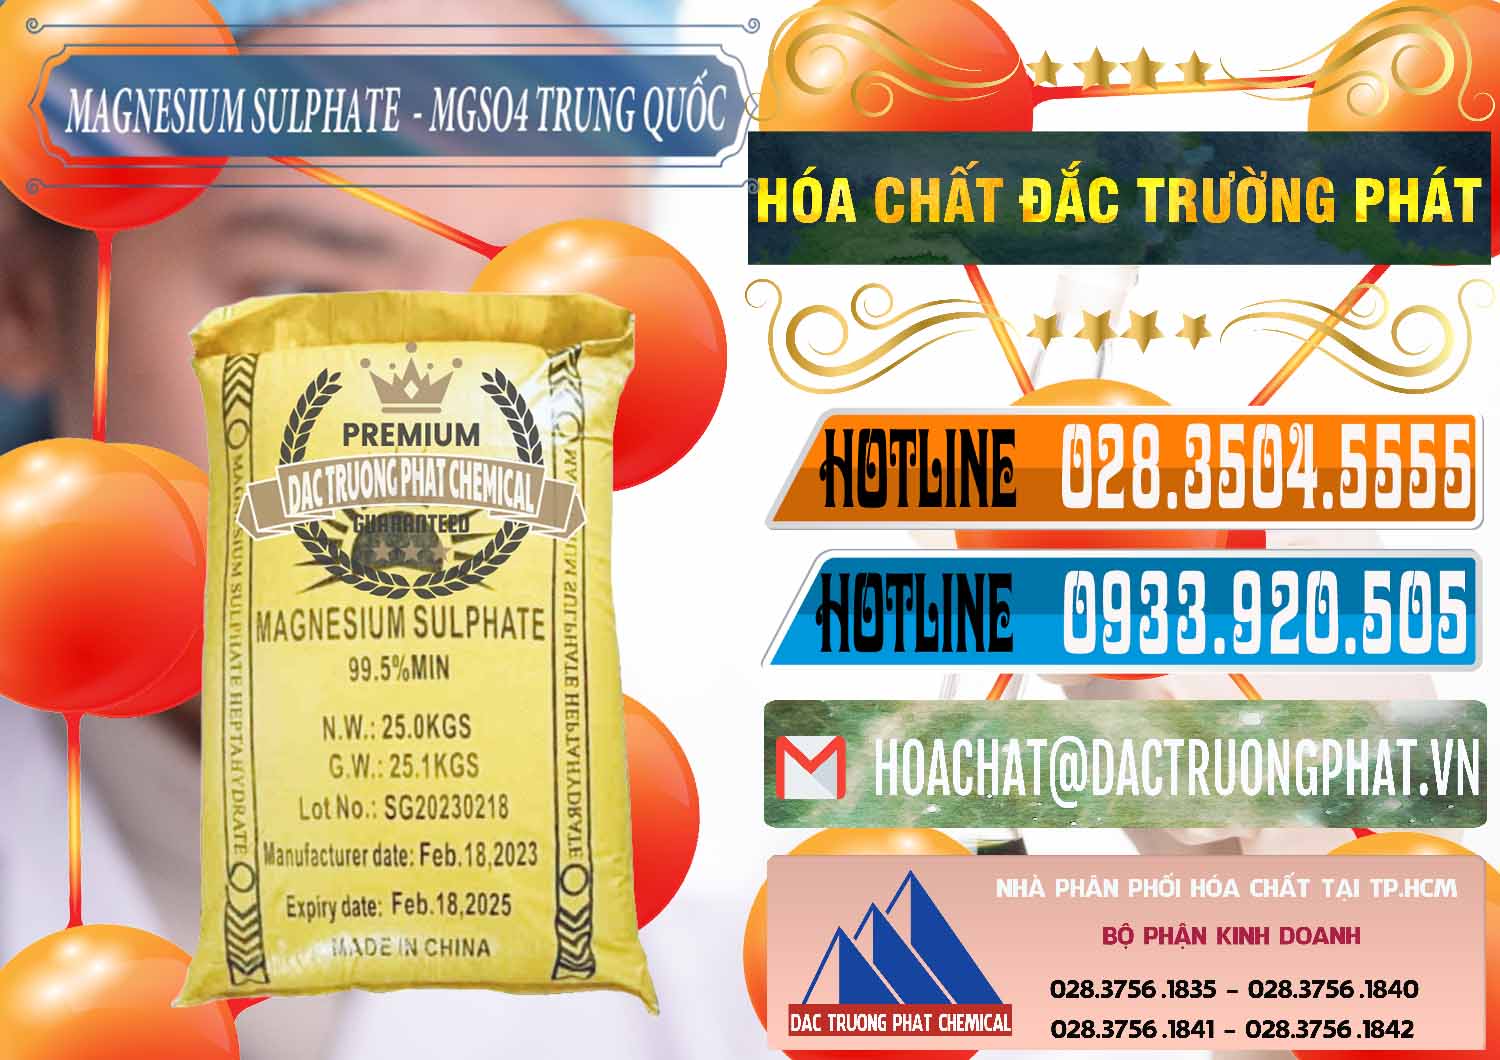 Đơn vị chuyên bán ( phân phối ) MGSO4.7H2O – Magnesium Sulphate Heptahydrate Logo Mặt Trời Trung Quốc China - 0391 - Cty chuyên bán _ phân phối hóa chất tại TP.HCM - stmp.net